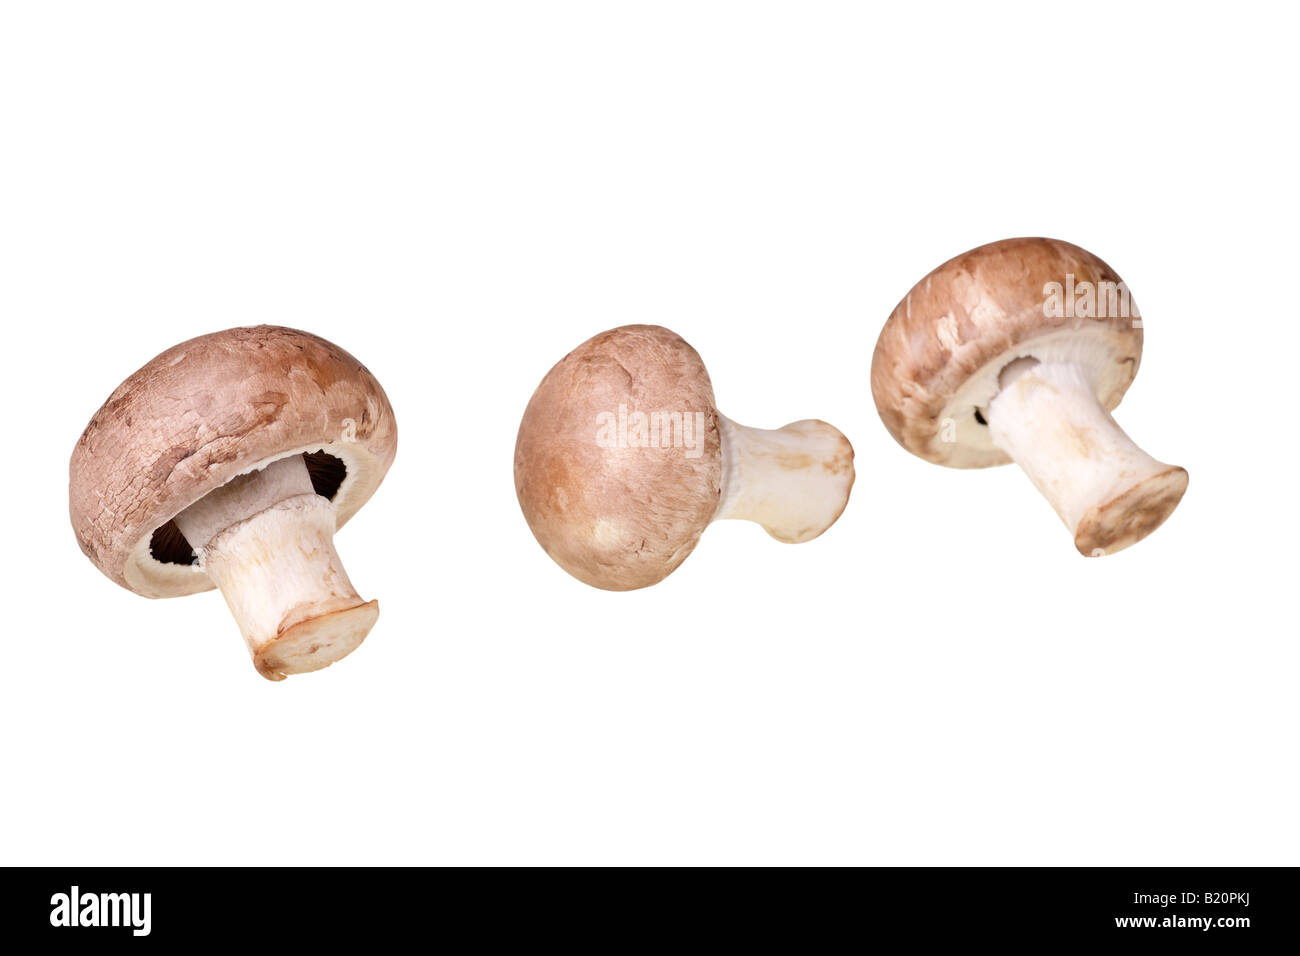 cultivated mushrooms (agaricus bisporus) Stock Photo